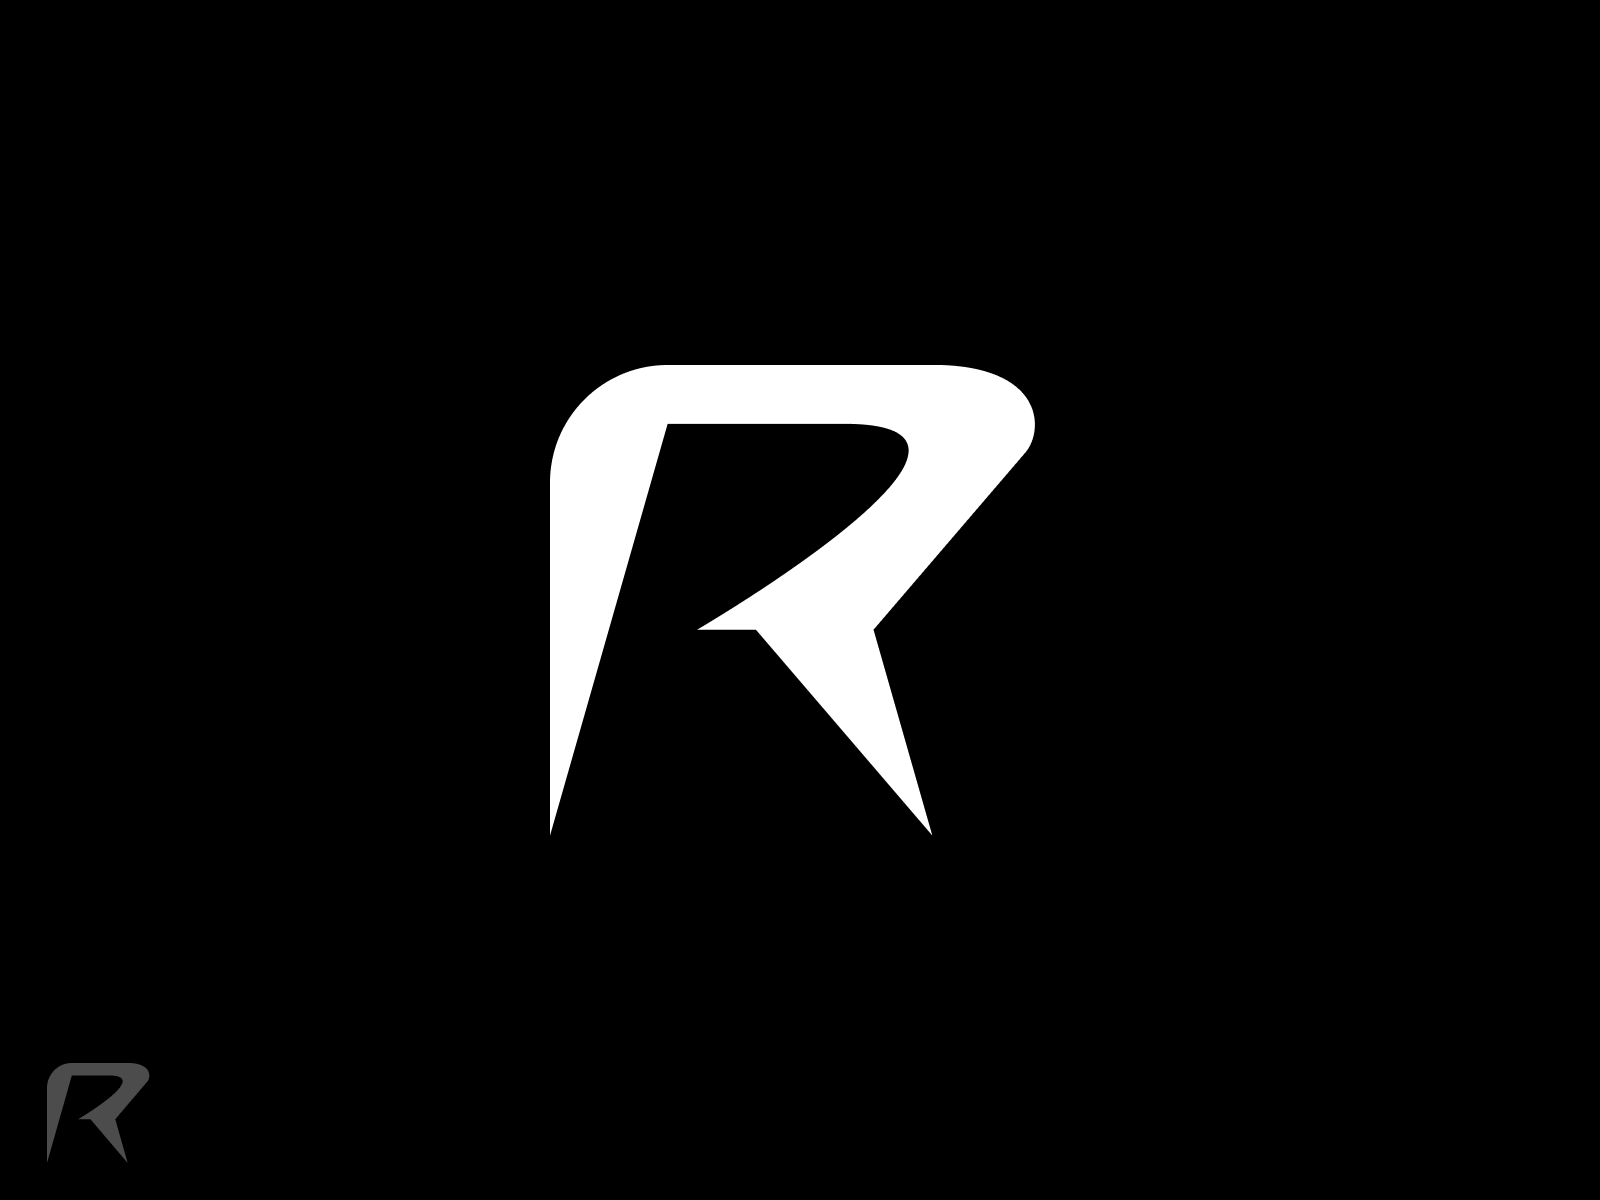 Logo thiết kế R sẽ là một lựa chọn tuyệt vời cho việc thương hiệu hóa doanh nghiệp của bạn. Đừng bỏ qua cơ hội để xem những thiết kế logo R độc đáo và ấn tượng, giúp cho thương hiệu của bạn trở nên nổi bật hơn trong mắt khách hàng!